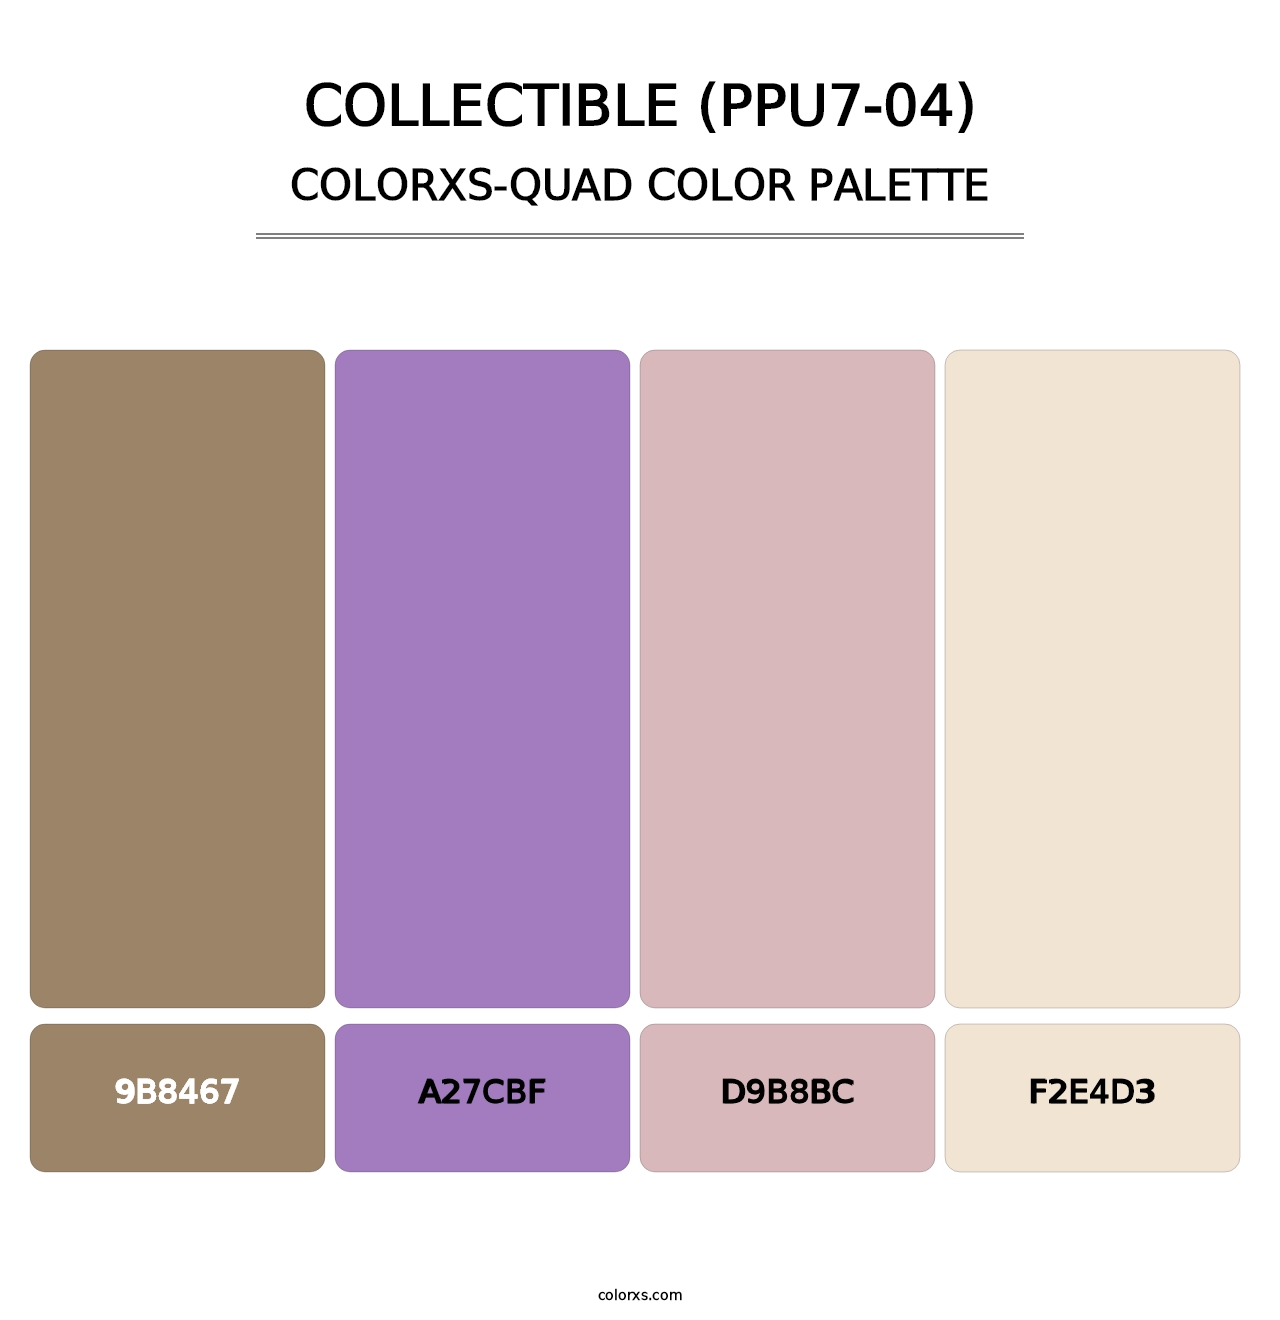 Collectible (PPU7-04) - Colorxs Quad Palette